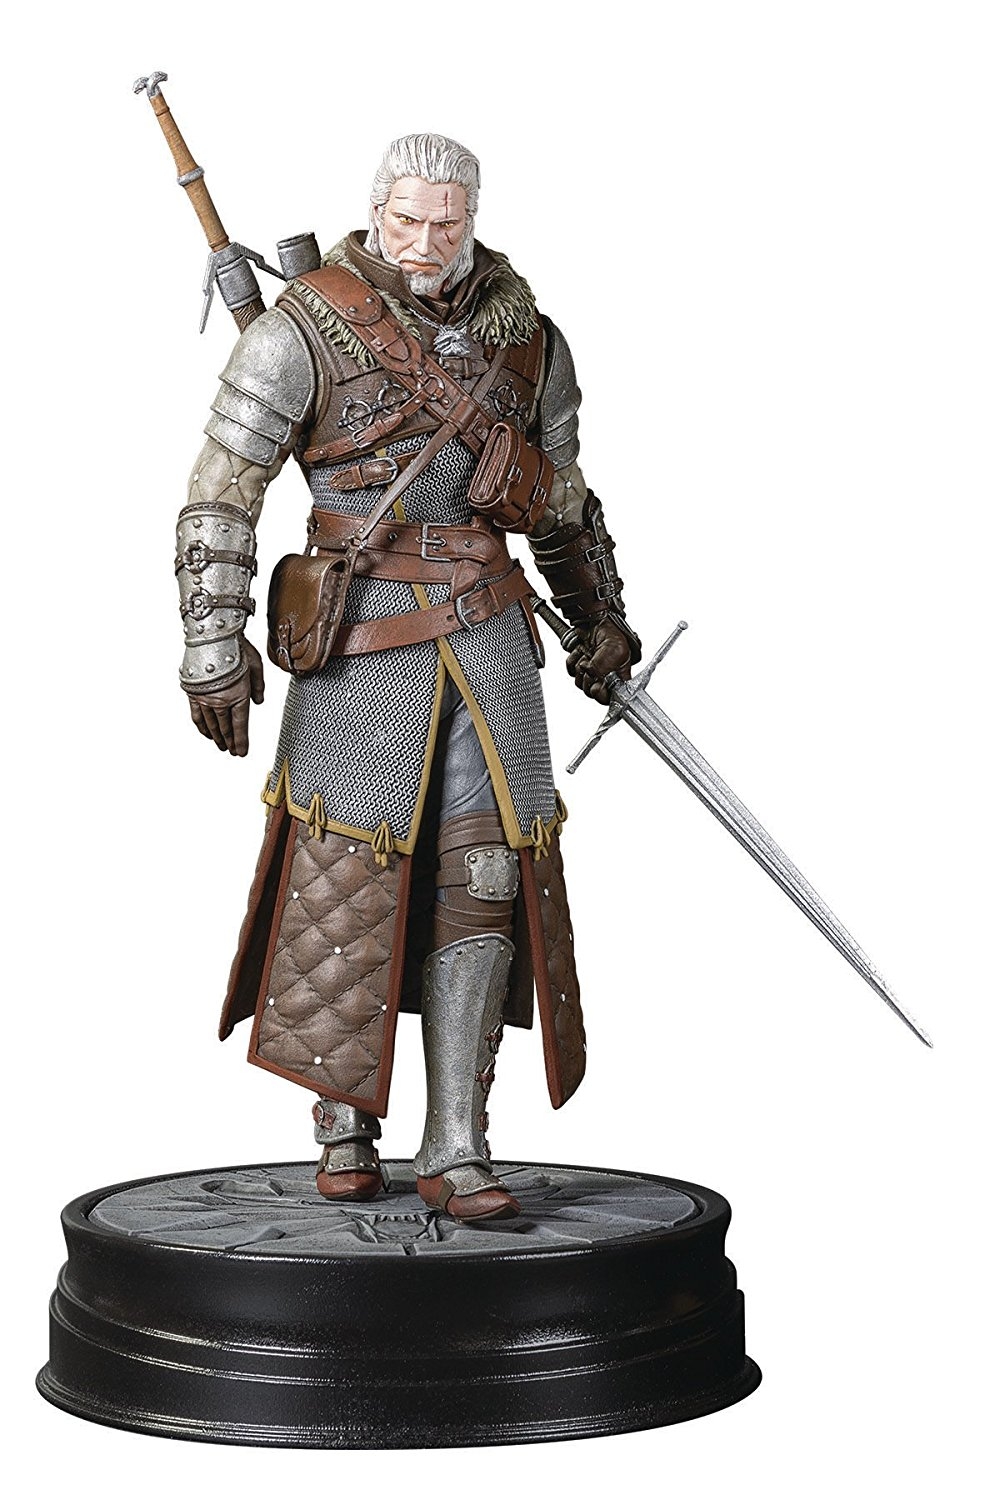 Statue Witcher 3 Wild Hunt - Geralt Grandmaster Ursine 